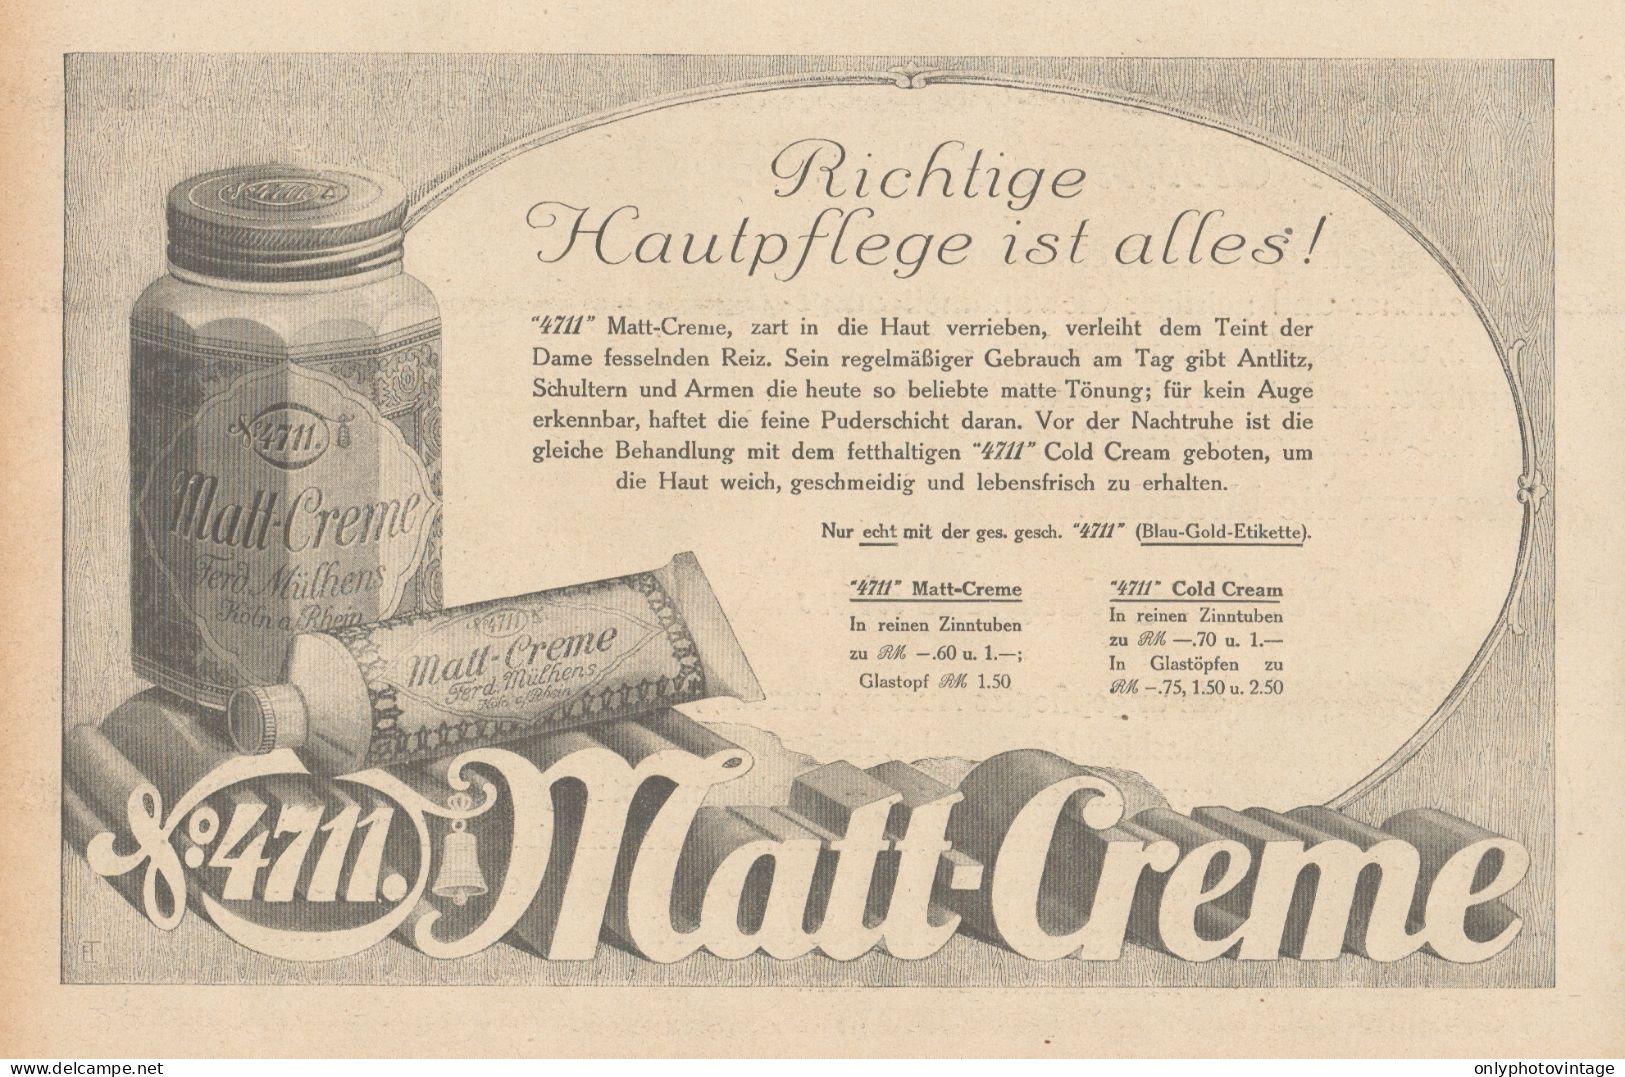 Matt Creme 4711 - Illustrazione - Pubblicità D'epoca - 1927 Old Advert - Werbung